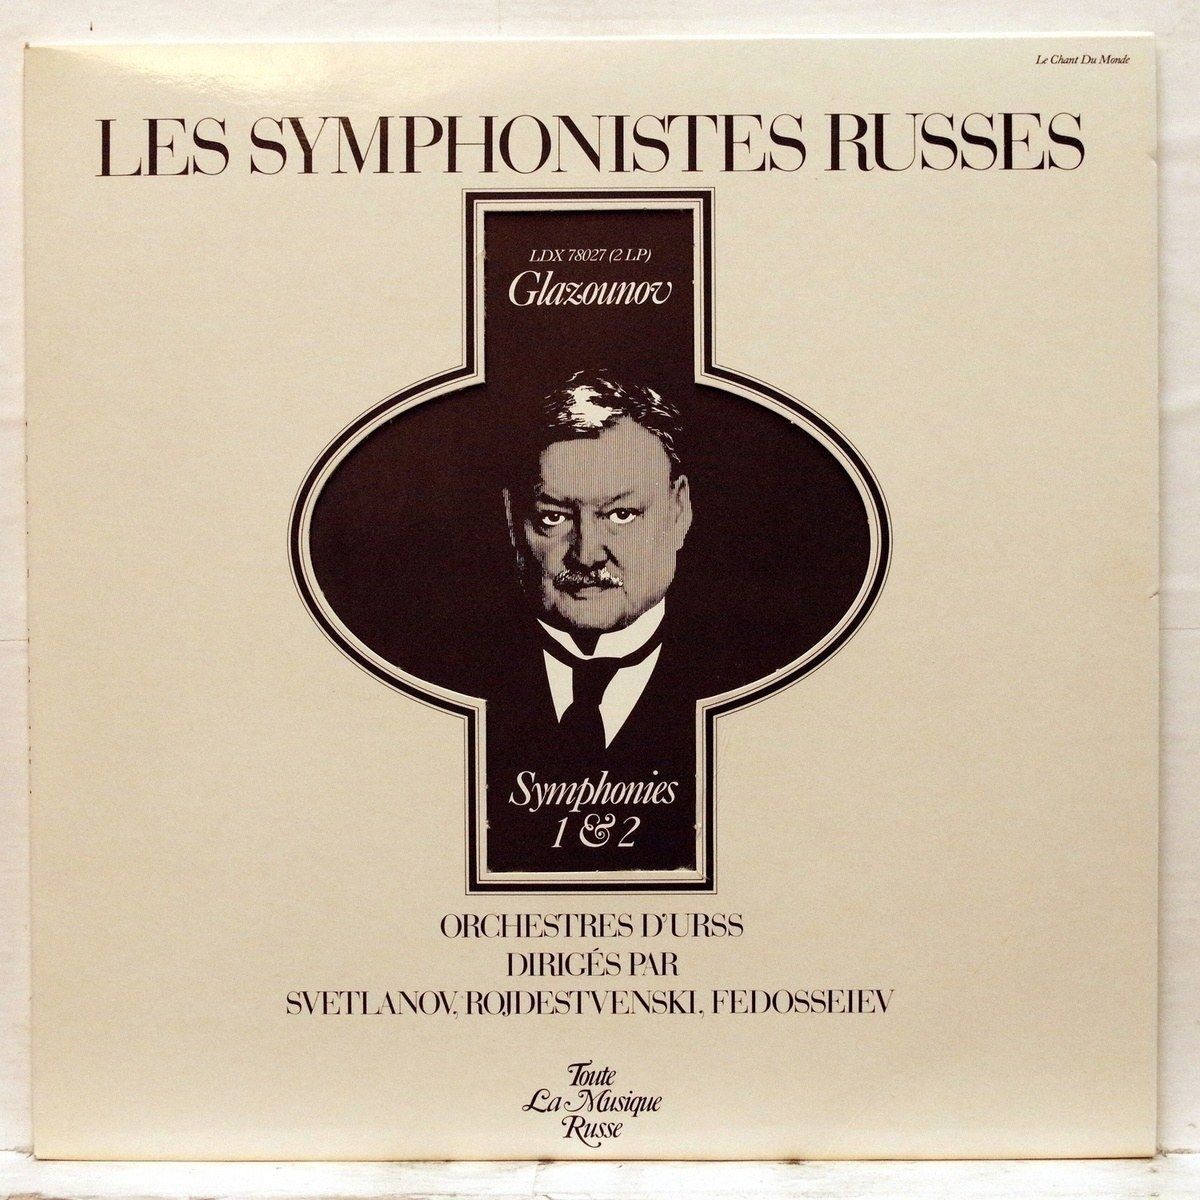 Les Symphonistes Russes. Glazounov. Symphonies 1 & 2 (Le Chant Du Monde ‎LDX 78027, 2LP)